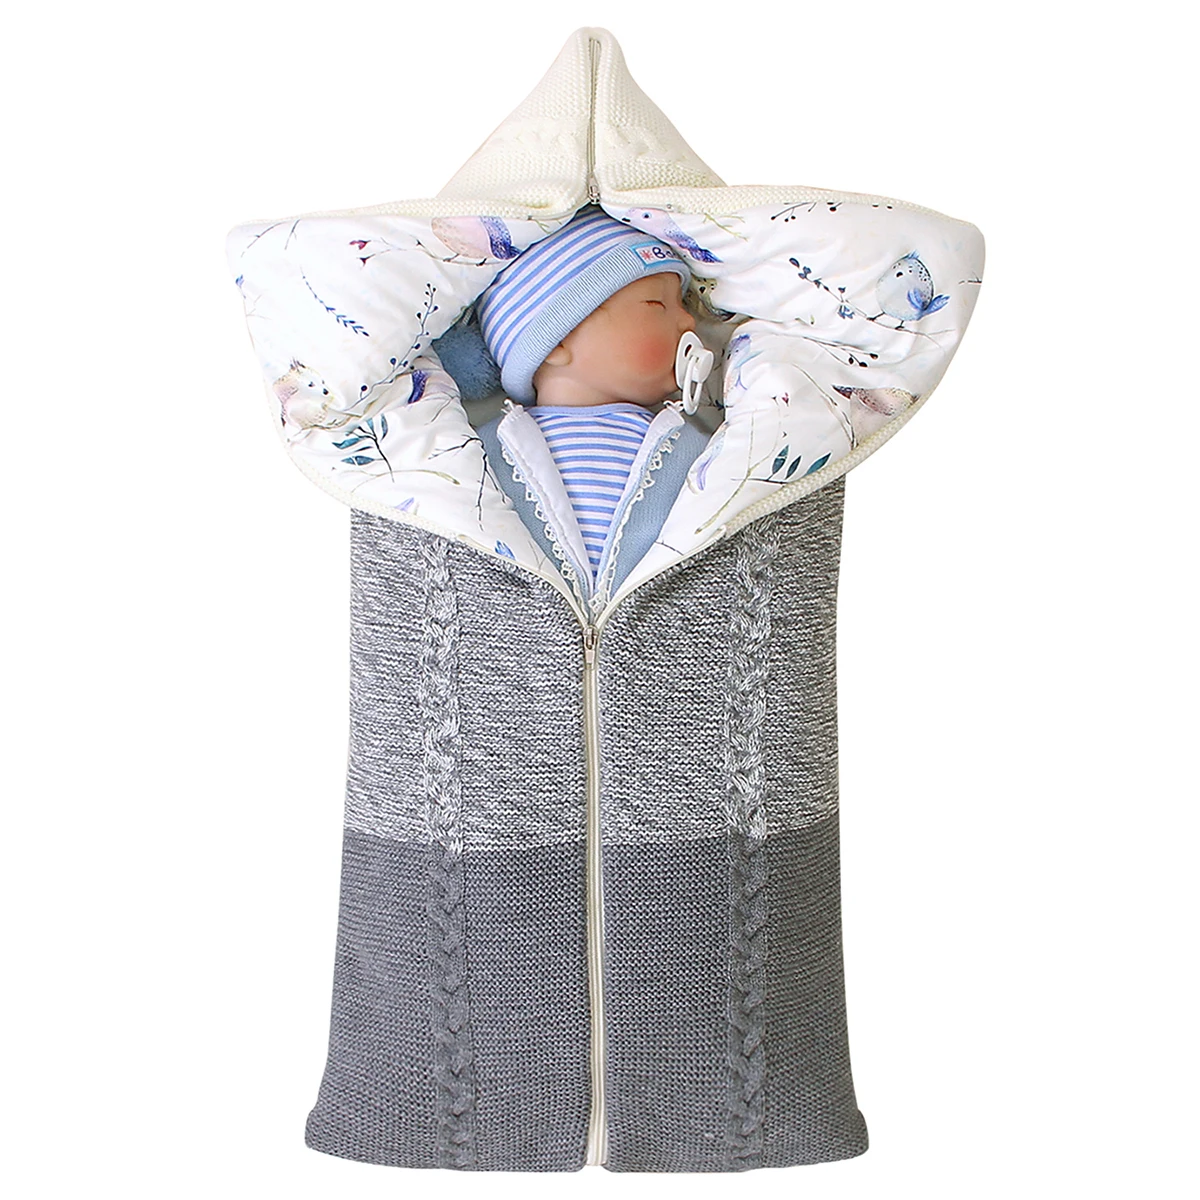 Конверты для новорожденных, акриловые волокна, полиэстер, спальные мешки, осень, серый цвет, на молнии, пеленка для младенцев, пеленка, спальный мешок, зимнее одеяло